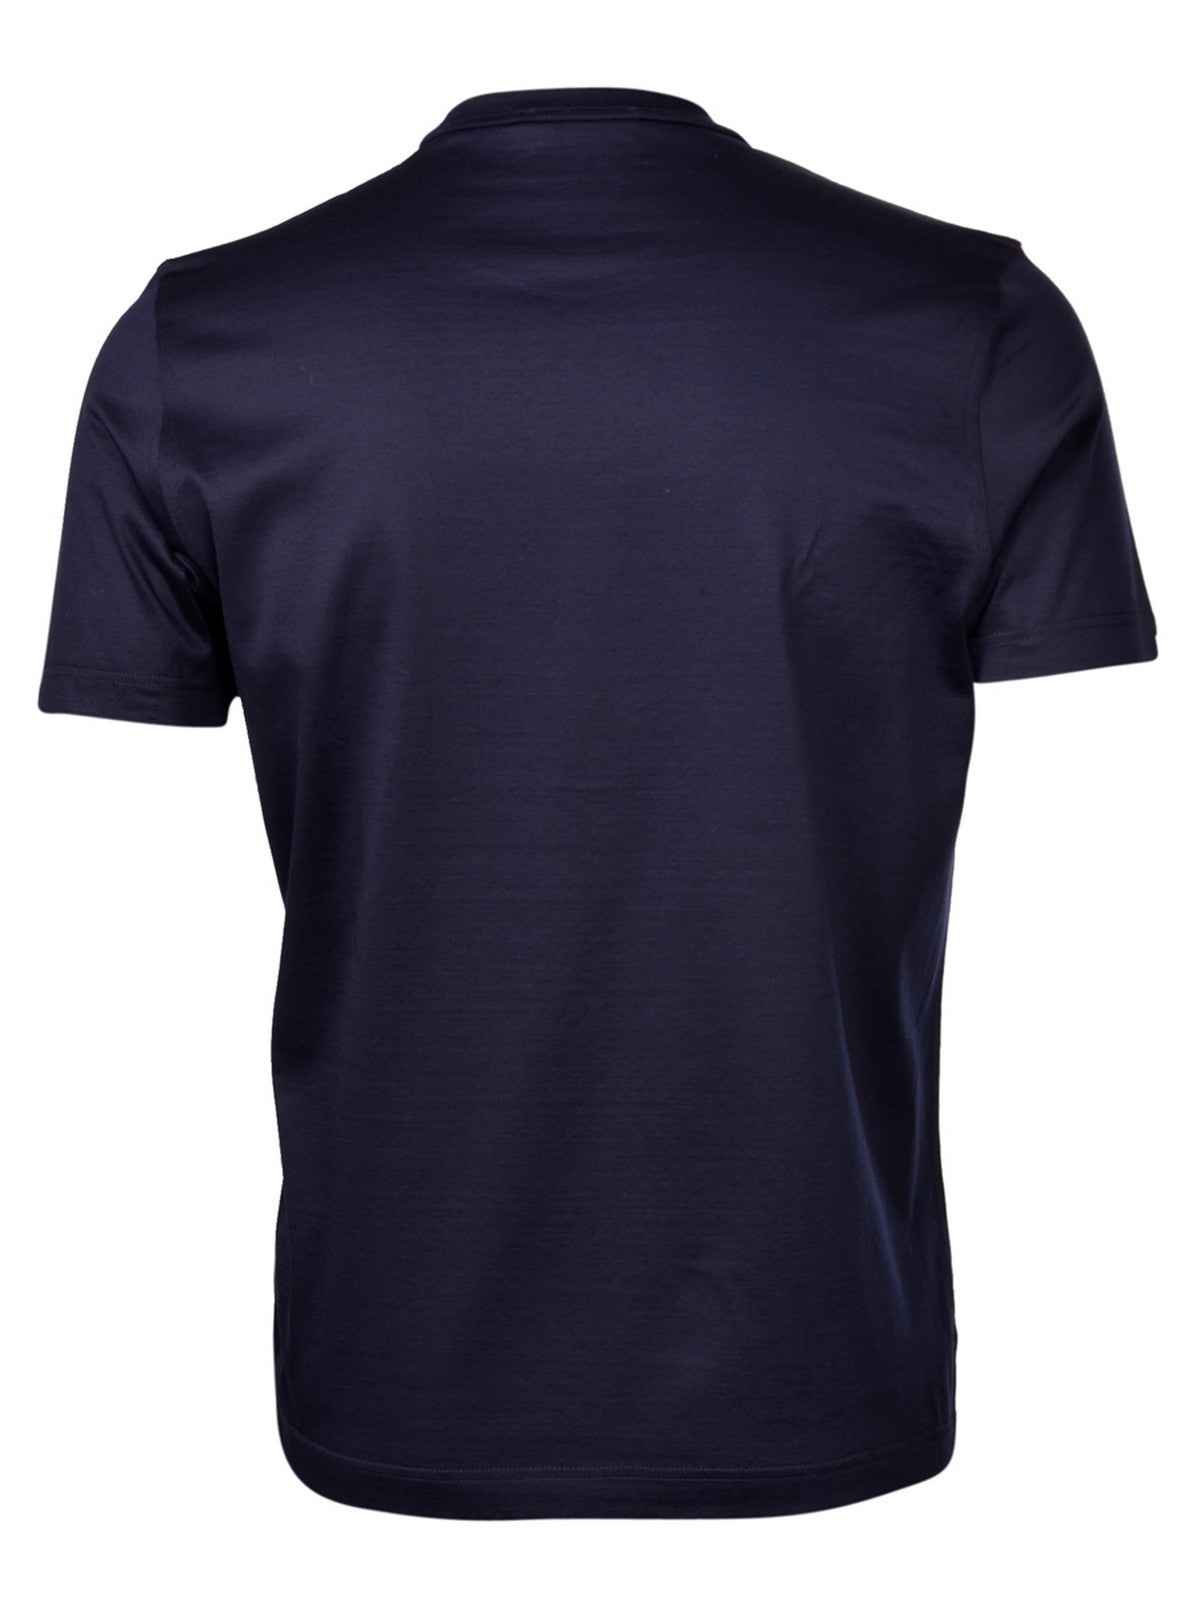 GRAN SASSO T-Shirt e Polo Uomo  60133/74002 598 Blu